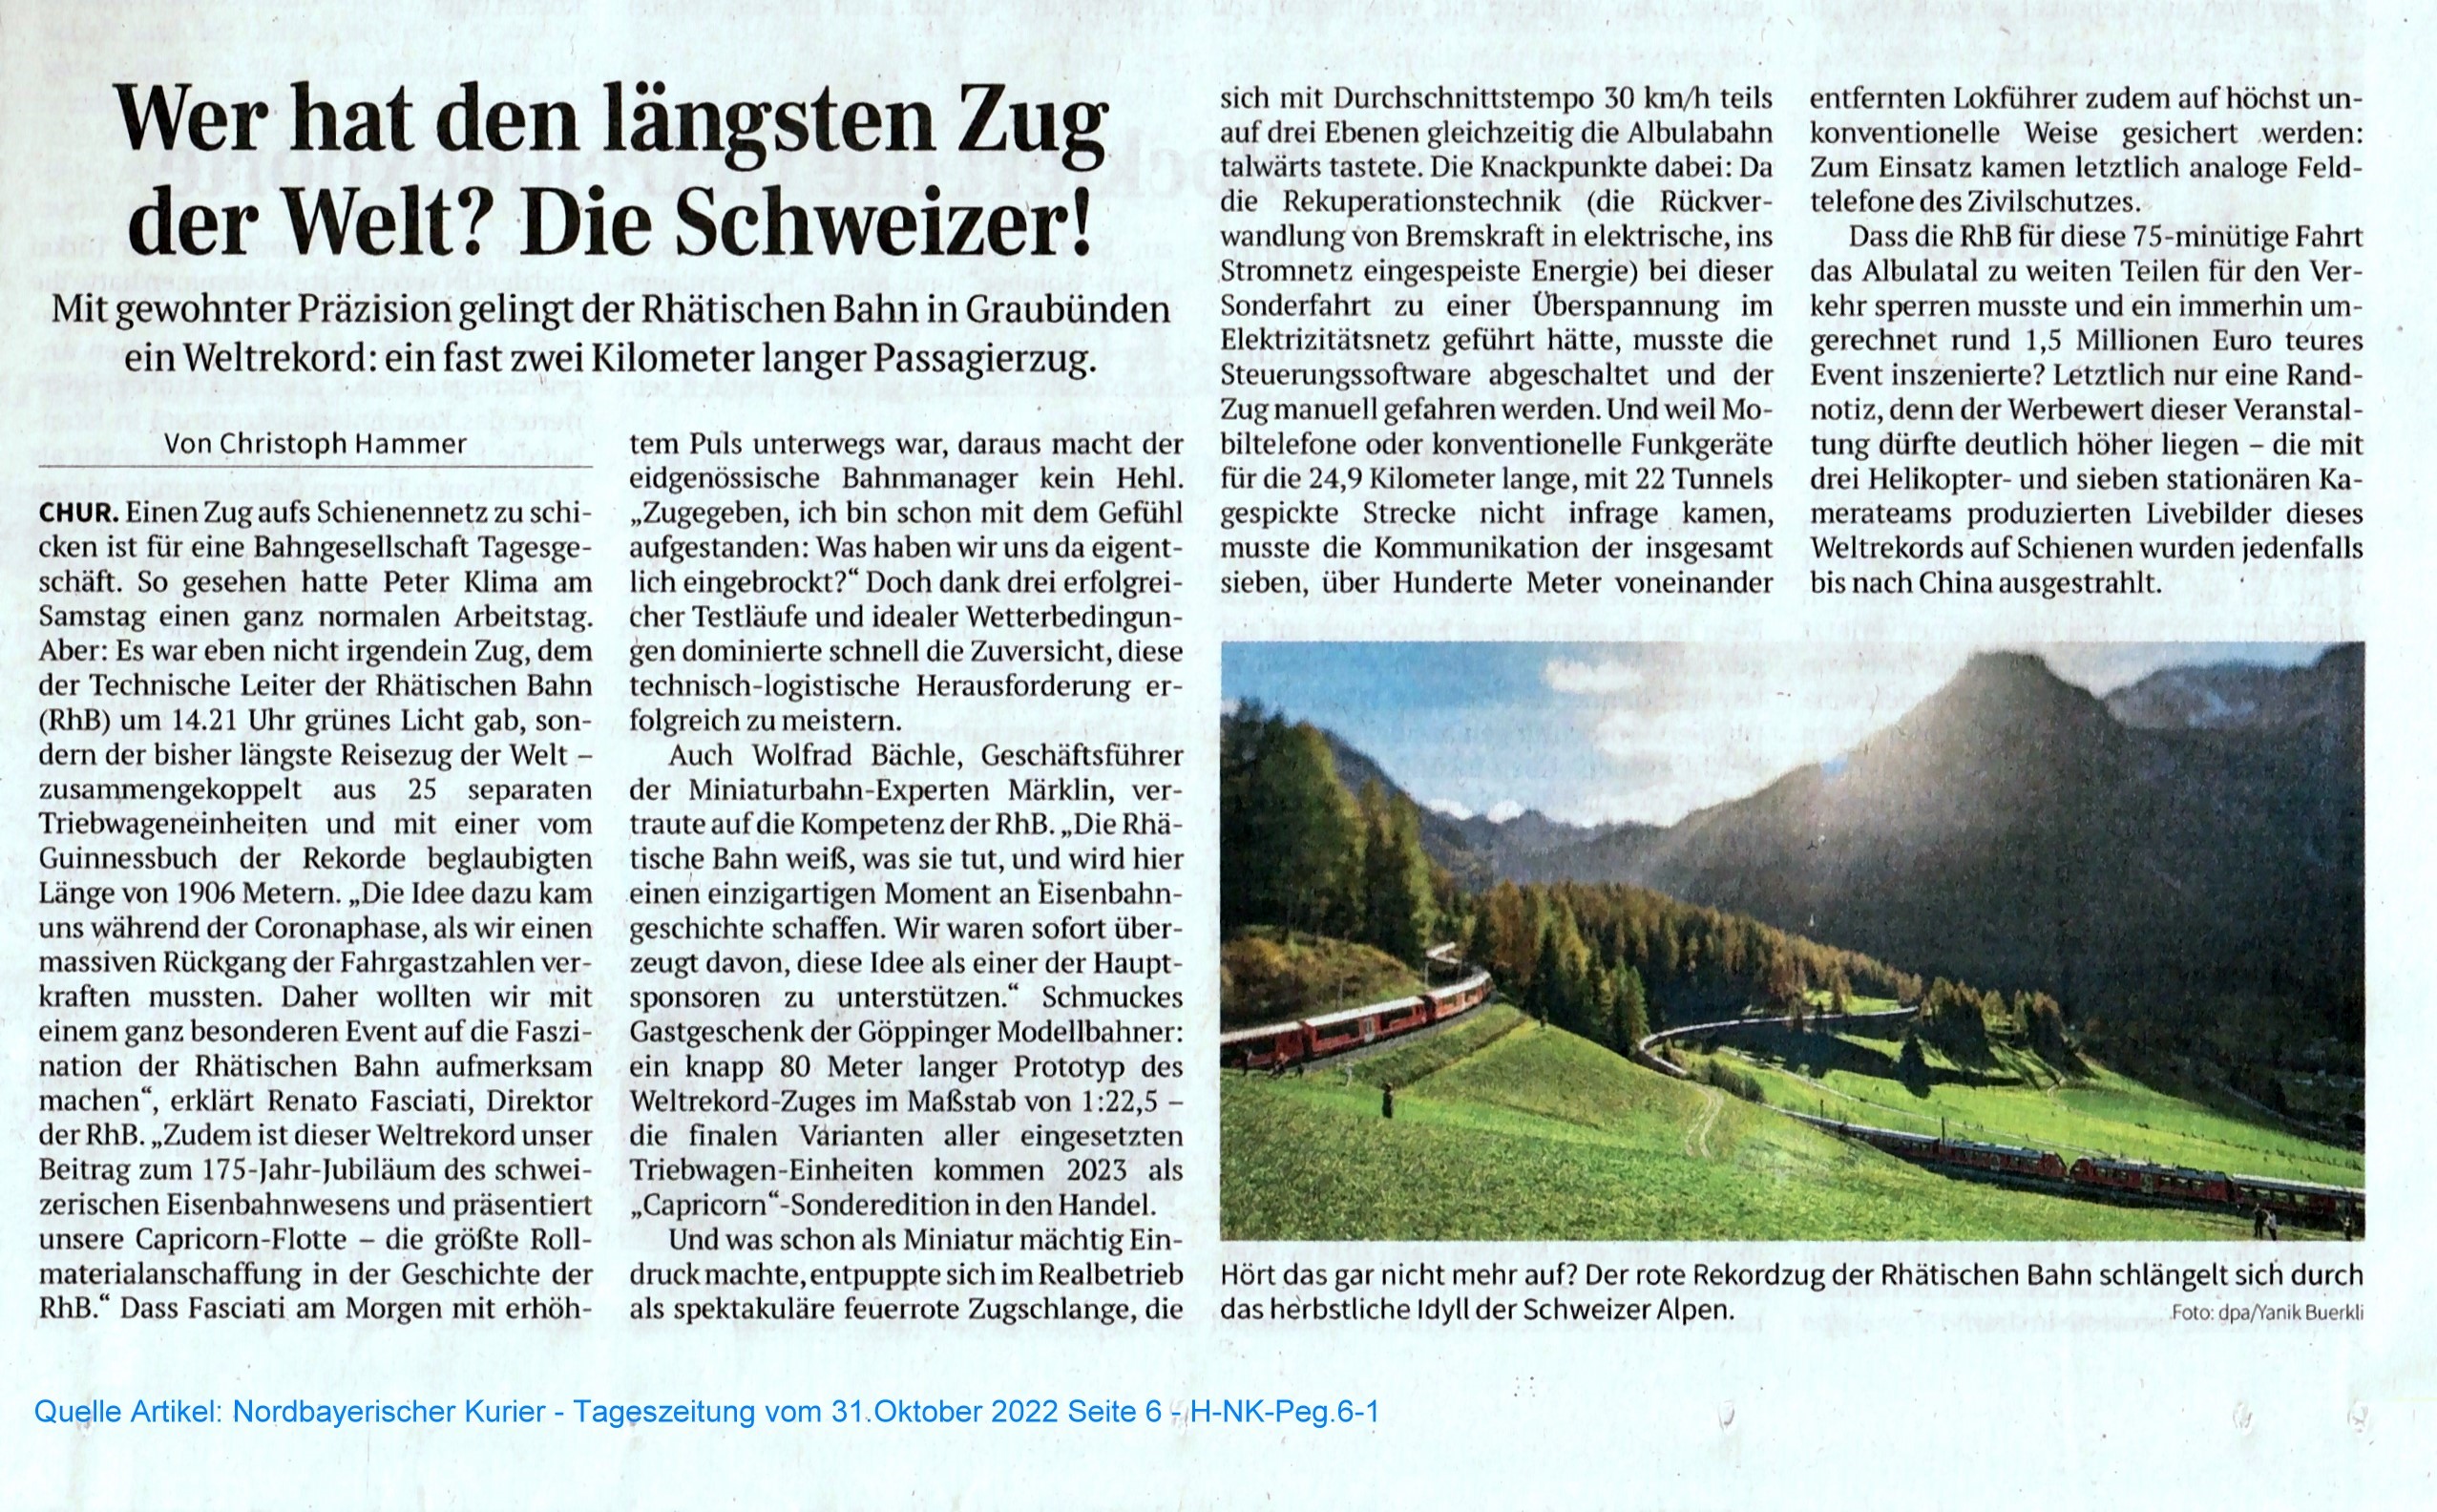 Wer hat den lngsten Zug der Welt? Die Schweizer! - Scan vom Bericht aus dem Nordbayerischen Kurier vom 31.10.2022. 